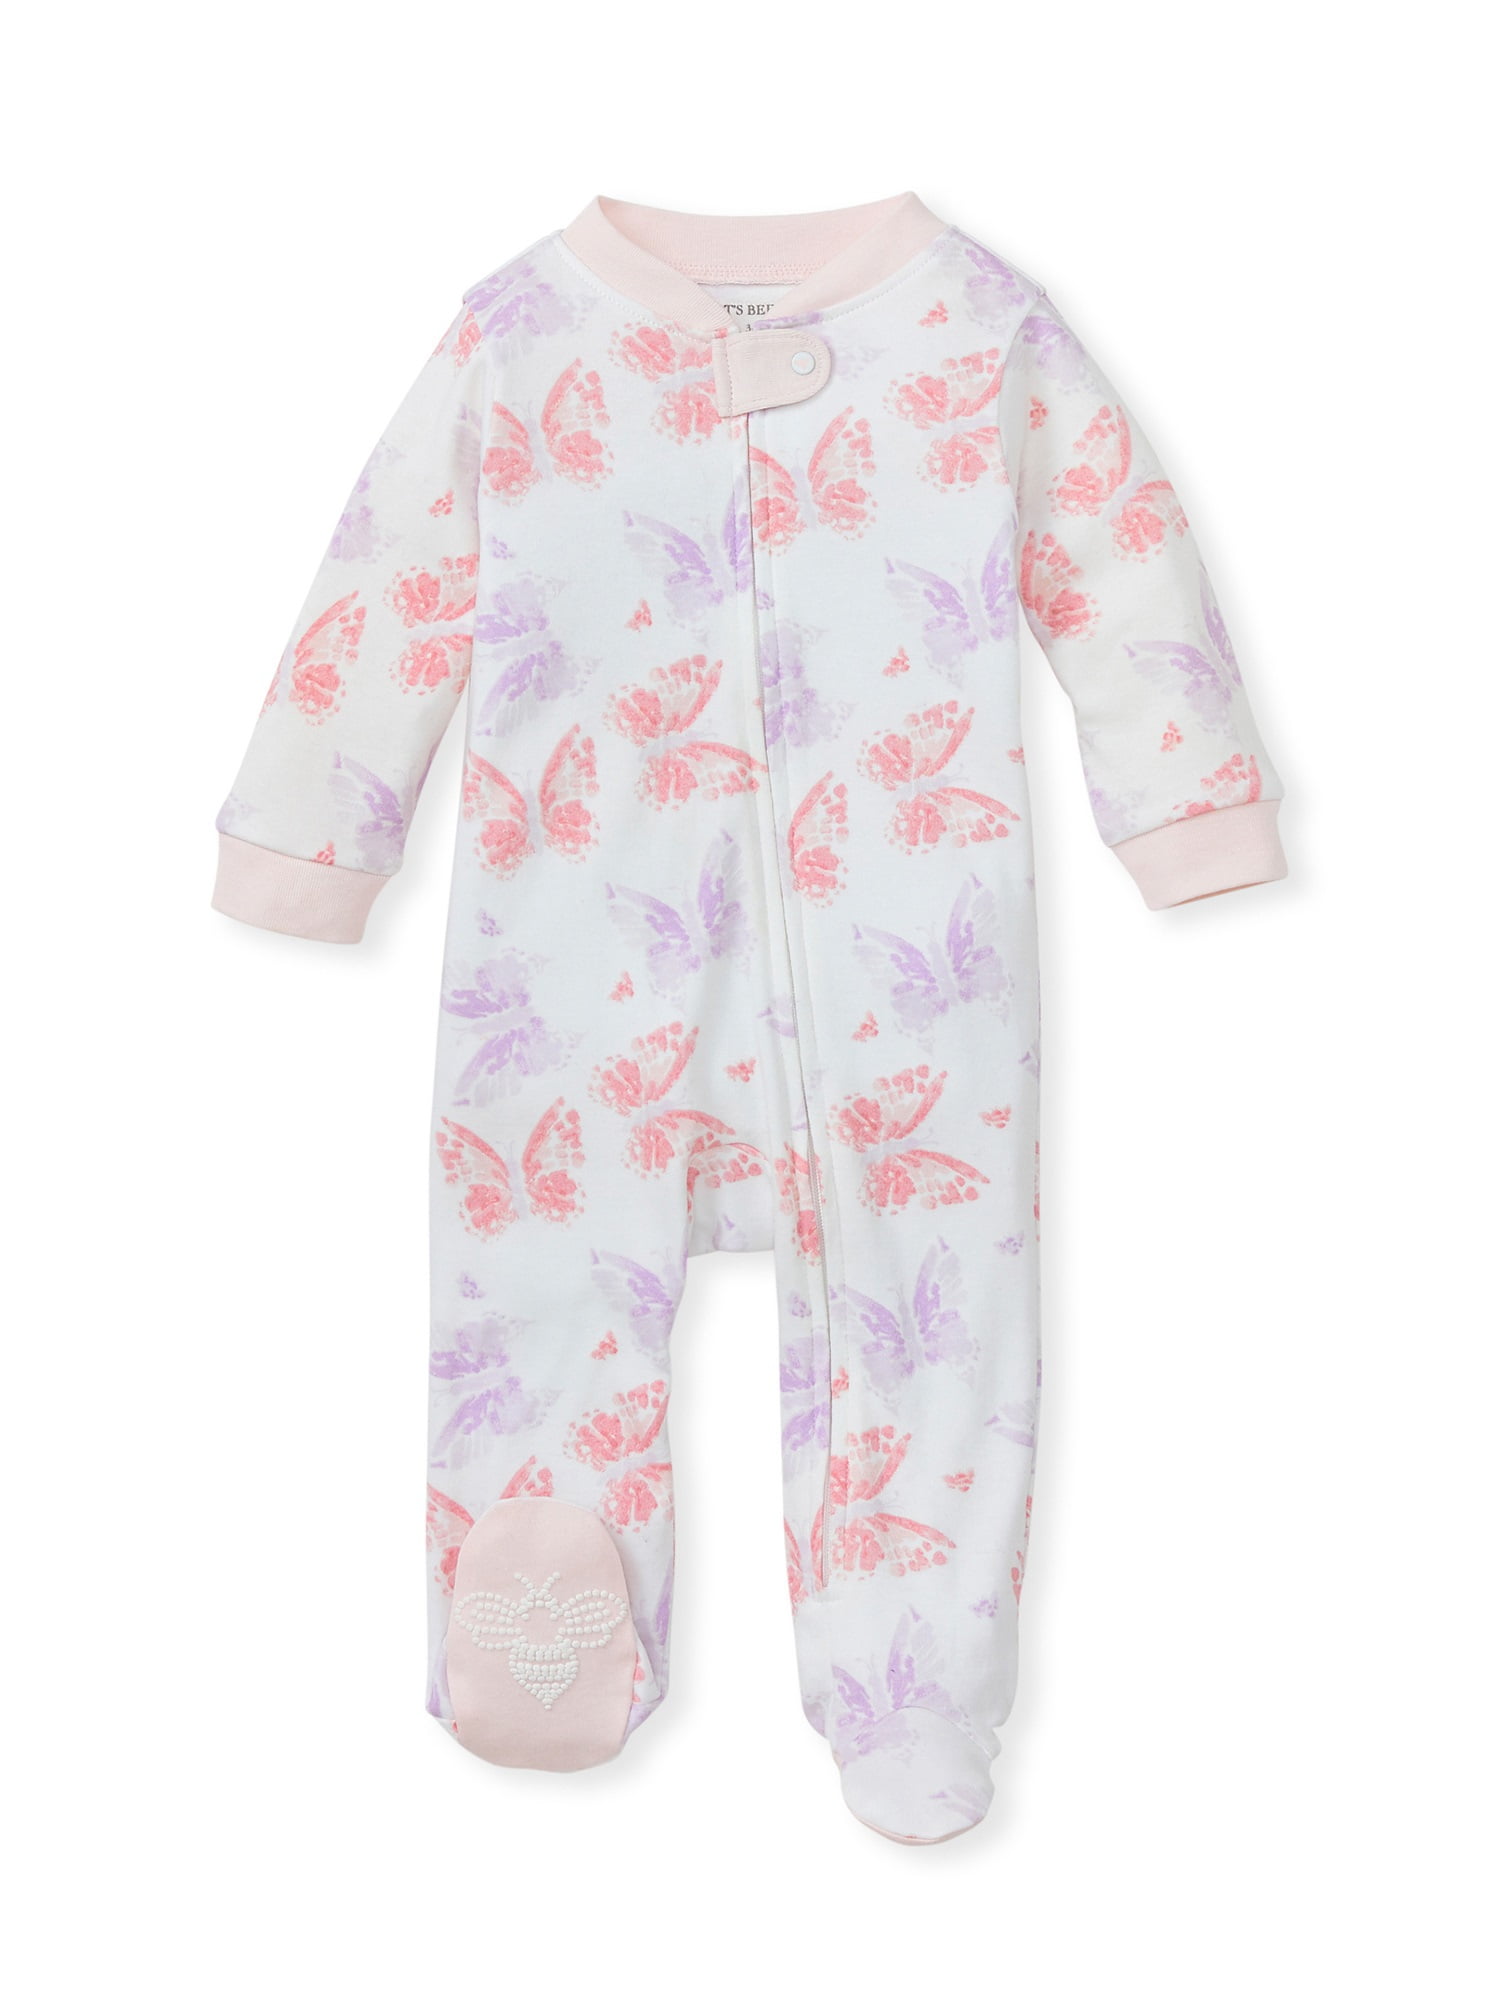 Lamaze Organic Baby Baby Girls Sleep N Play Footed Sleepwear 2 Pack Preemie White